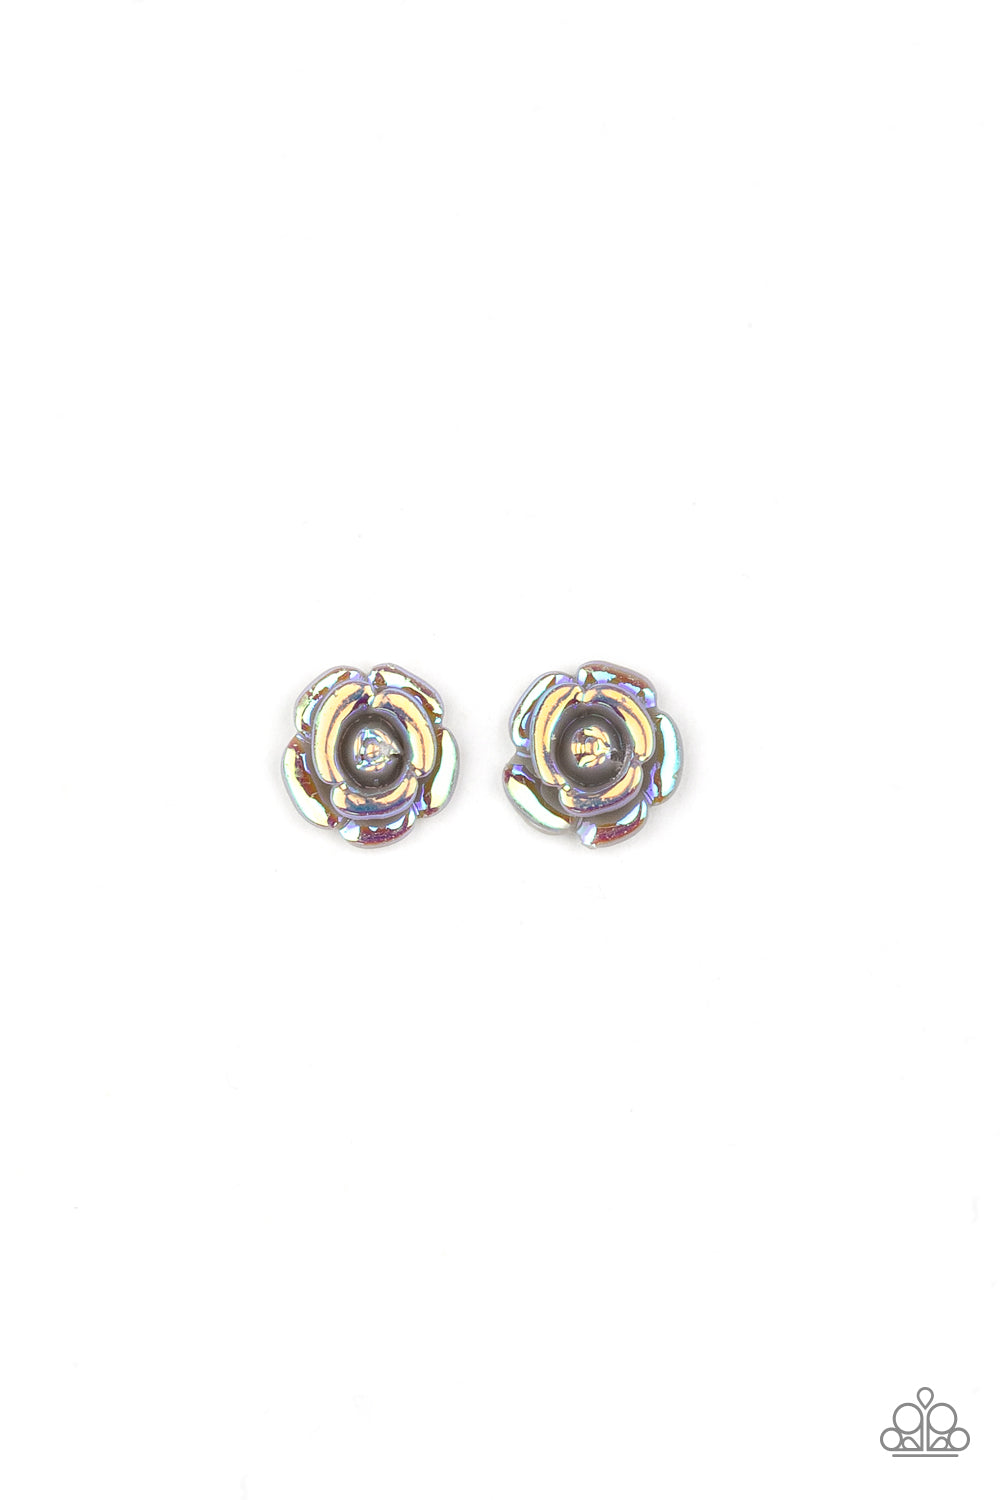 Paparazzi ♥ Starlet Shimmer Earring Kit P5SS-MTXX-317XX ♥  Starlet Shimmer Earrings